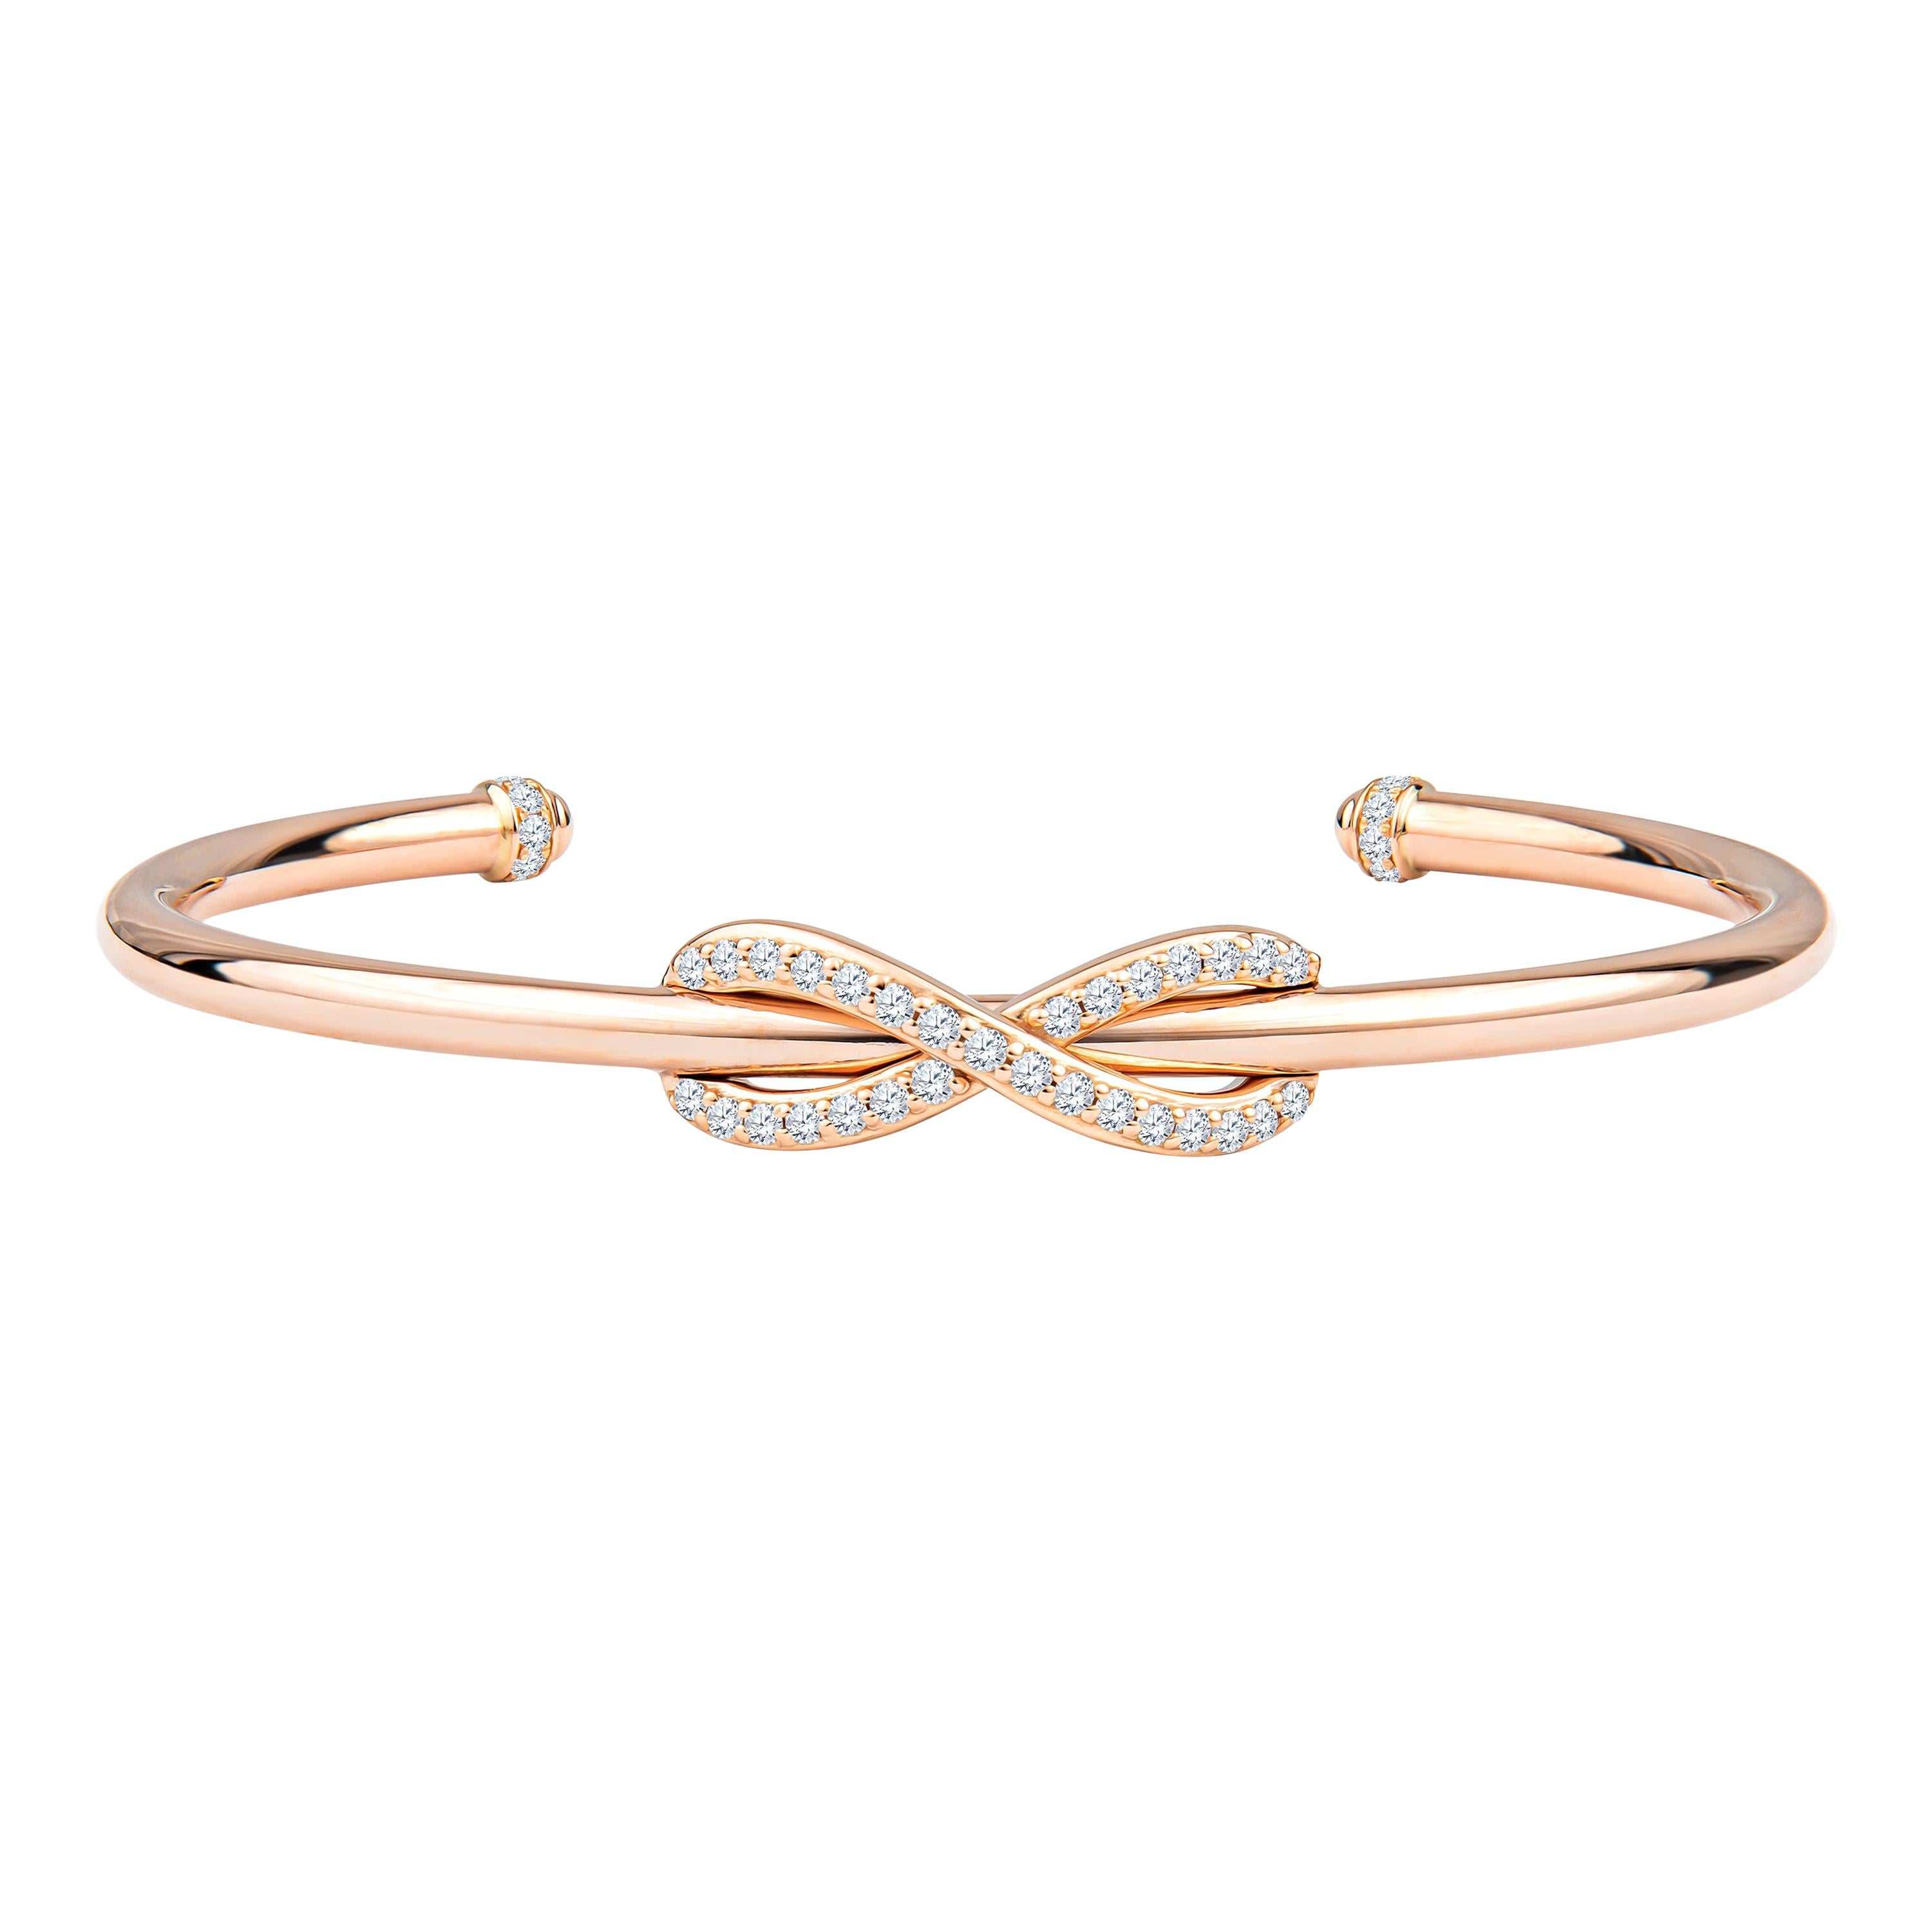 Tiffany Infinity Manchette en or rose 18 carats avec diamants ronds de 0,39 carat, D-F, VS-VVS